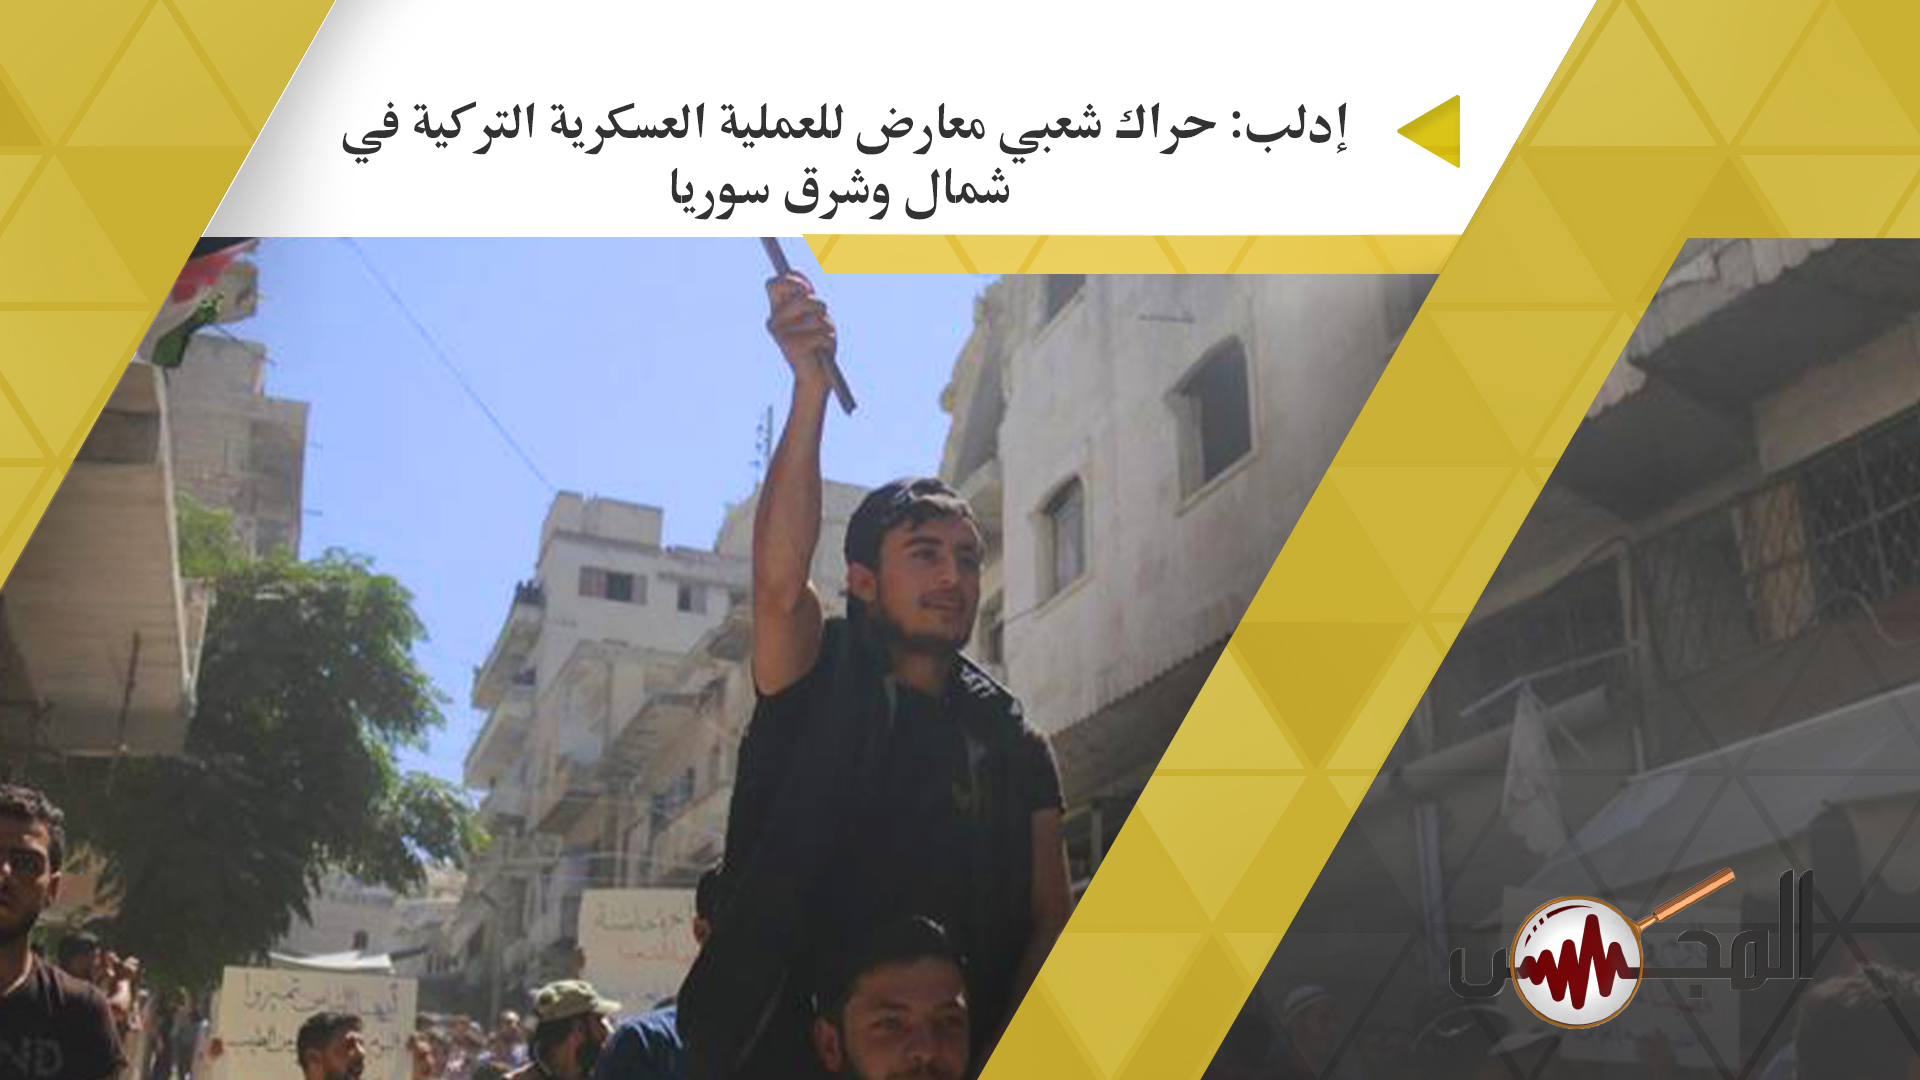 إدلب: حراك شعبي معارض للعملية العسكرية في شمال وشرق سوريا